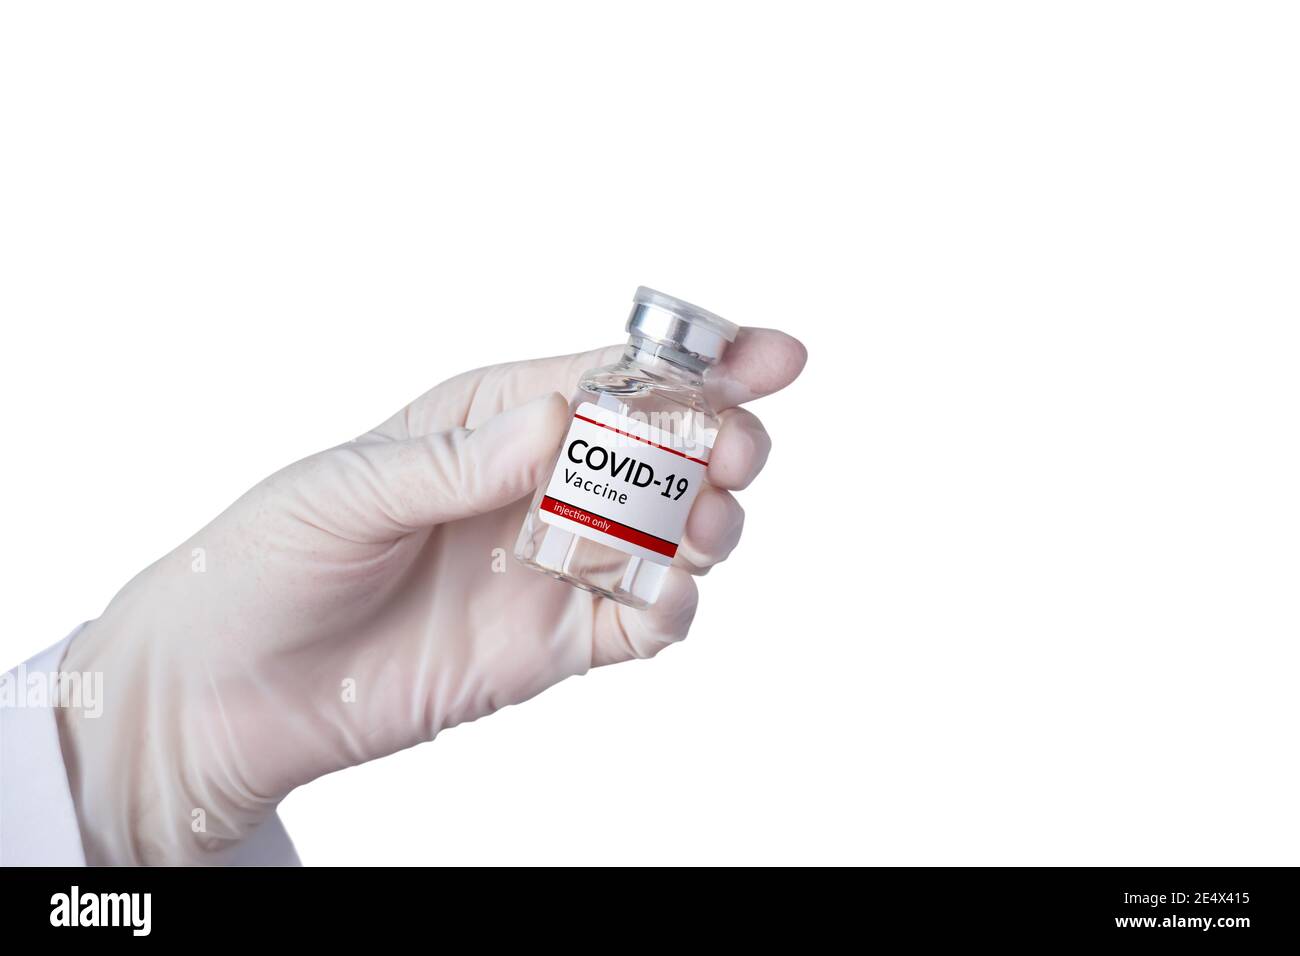 Vaccin coronavirus COVID-19 et concept d'immunisation main dans un gant blanc contenant un flacon de vaccin pour injection isolé sur fond blanc Banque D'Images